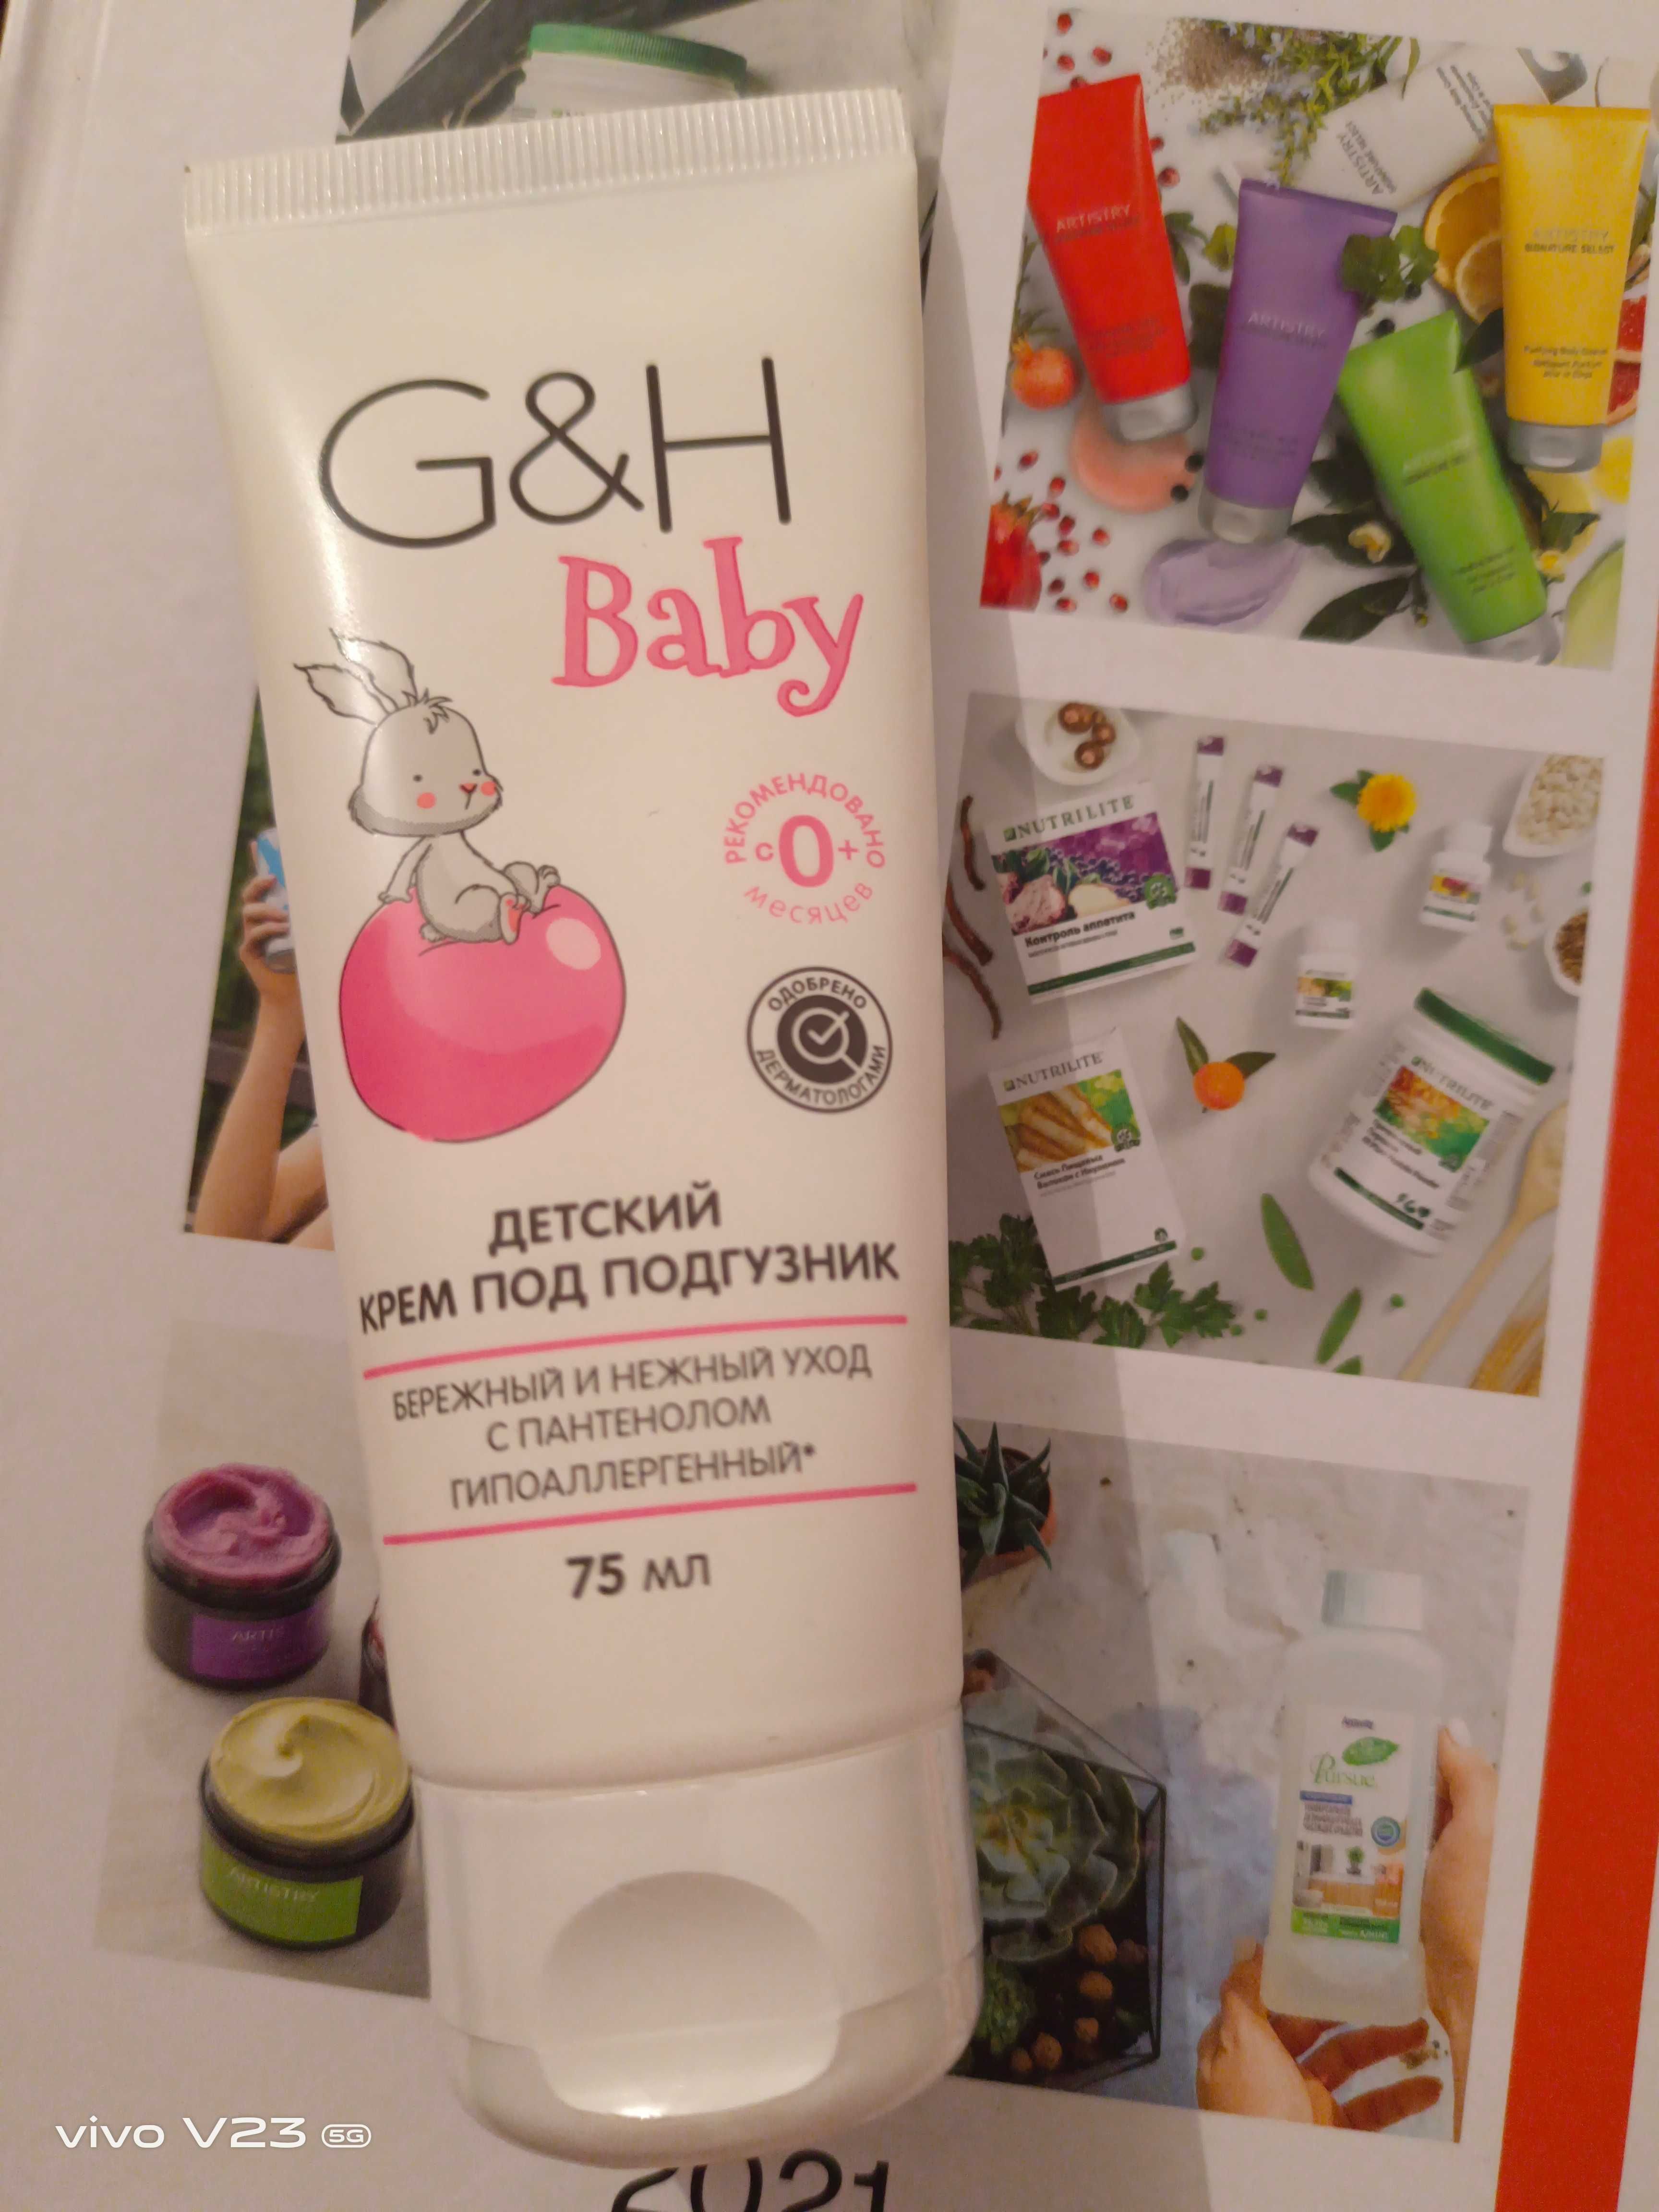 G&H baby Детский крем под подгузник